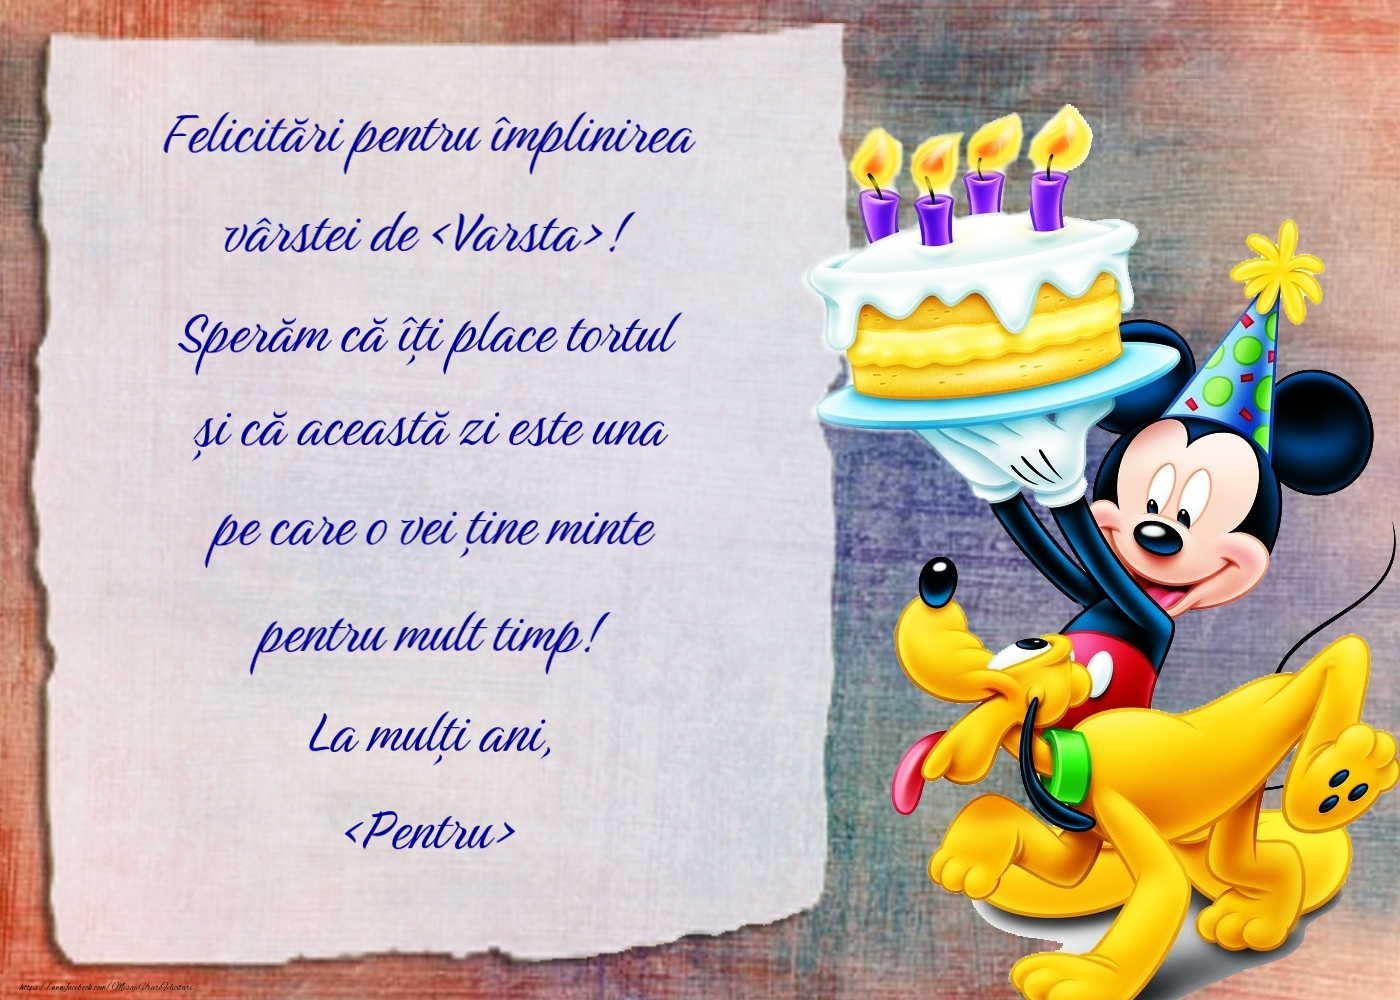 Felicitari personalizate pentru copii - Mickey mouse, Pluto și un tort imens cu lumânări aprinse